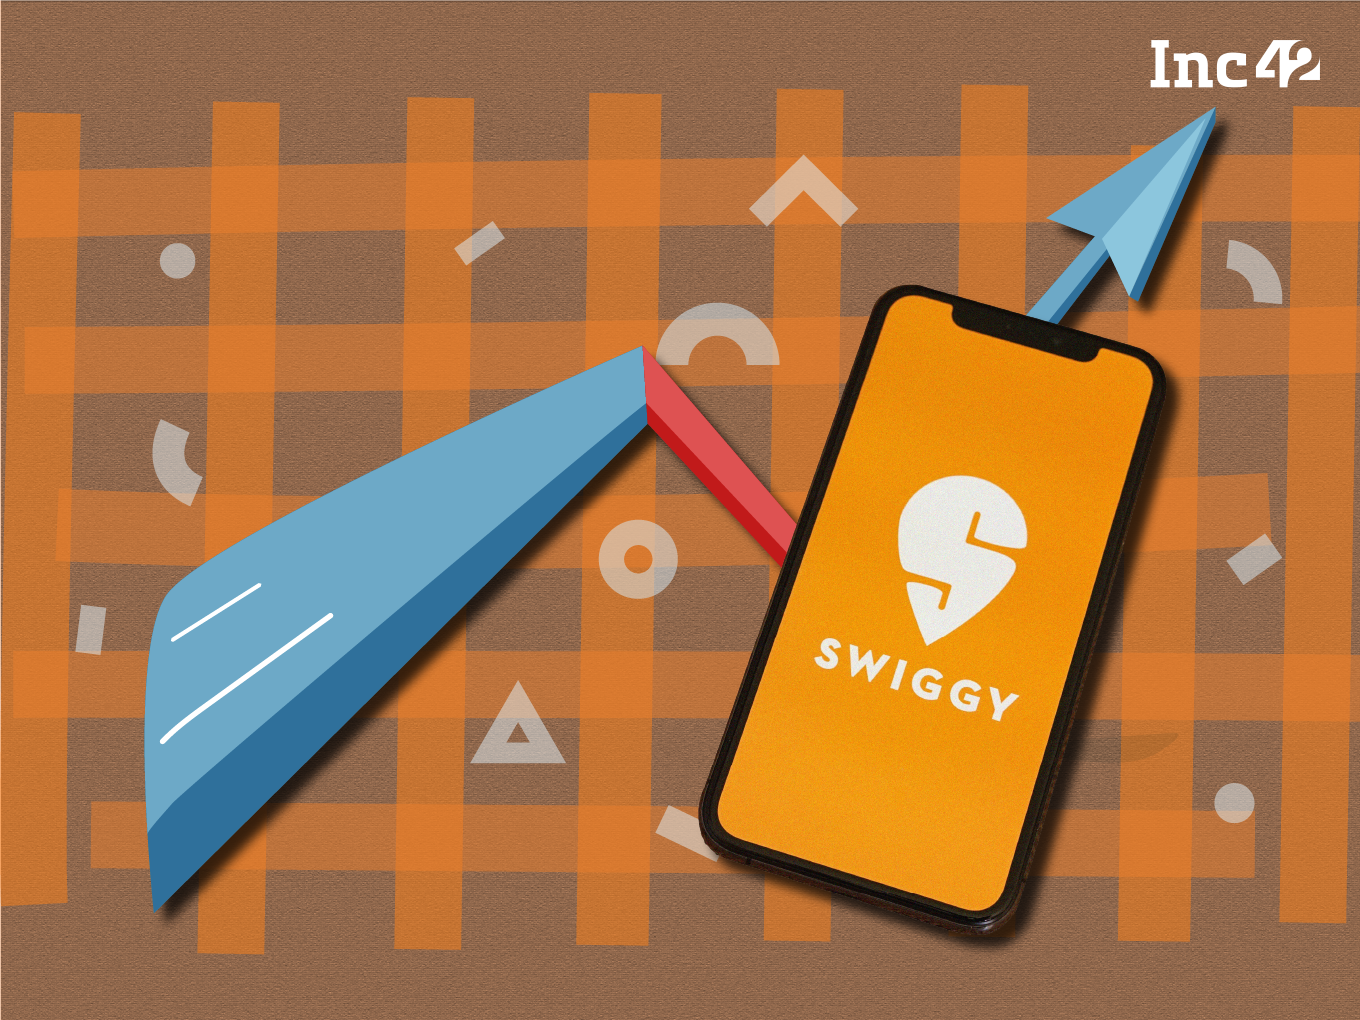 Free Swiggy Money | Swiggy Logo Game | Swiggy New Game - YouTube-cheohanoi.vn